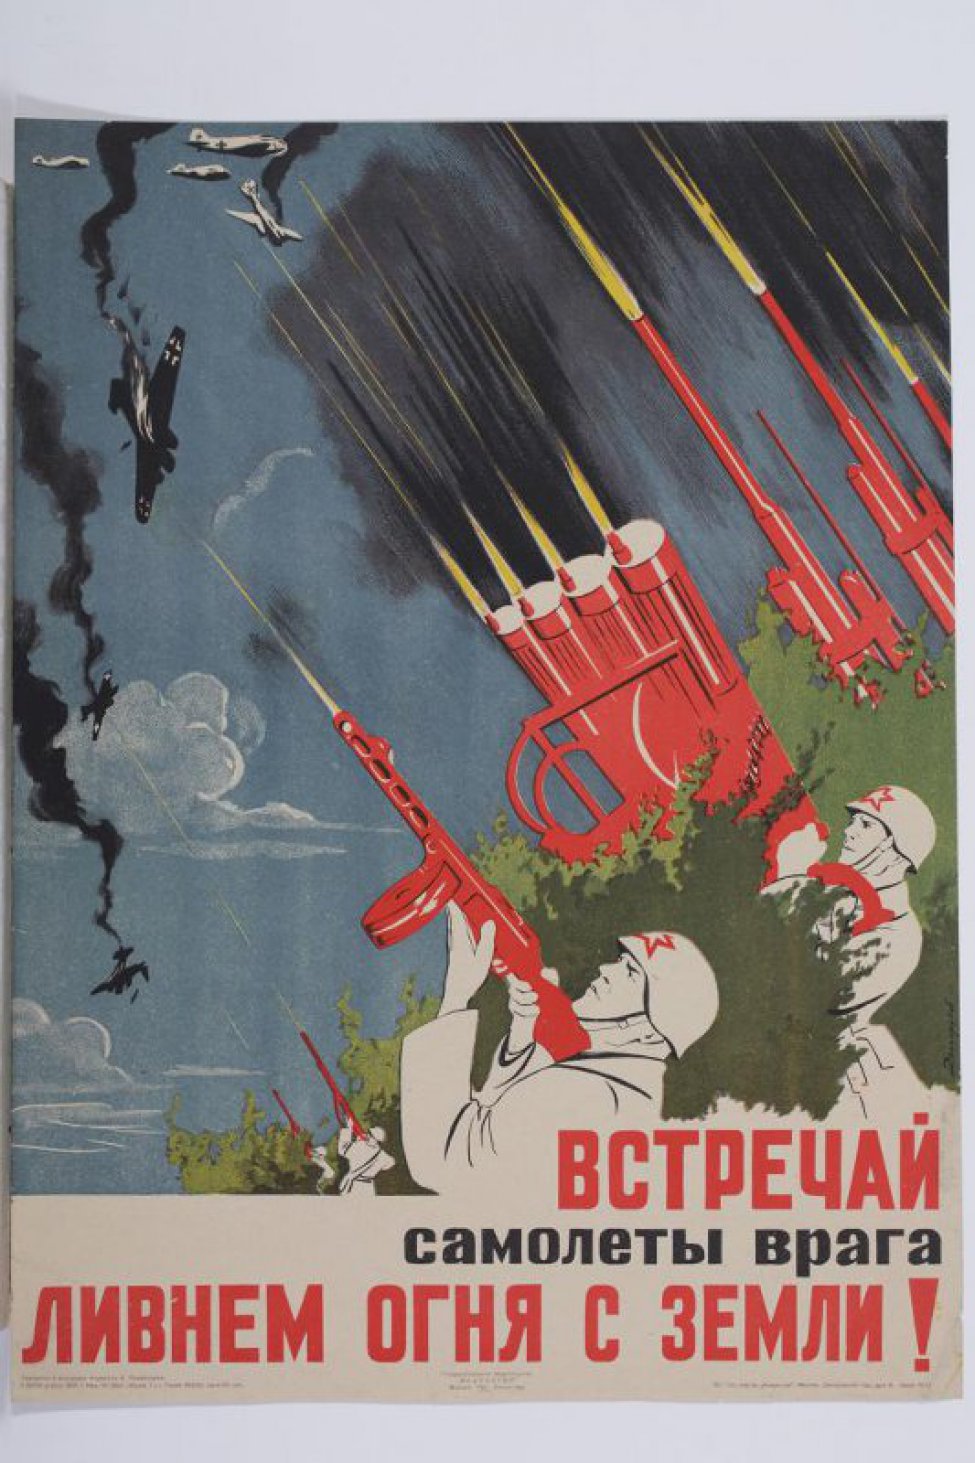 Справа - в листве кустарников несколько советских воинов, стреляющих в небо из разного вида орудий по фашистским самолётам, часть которых сбиты и объяты пламенем.